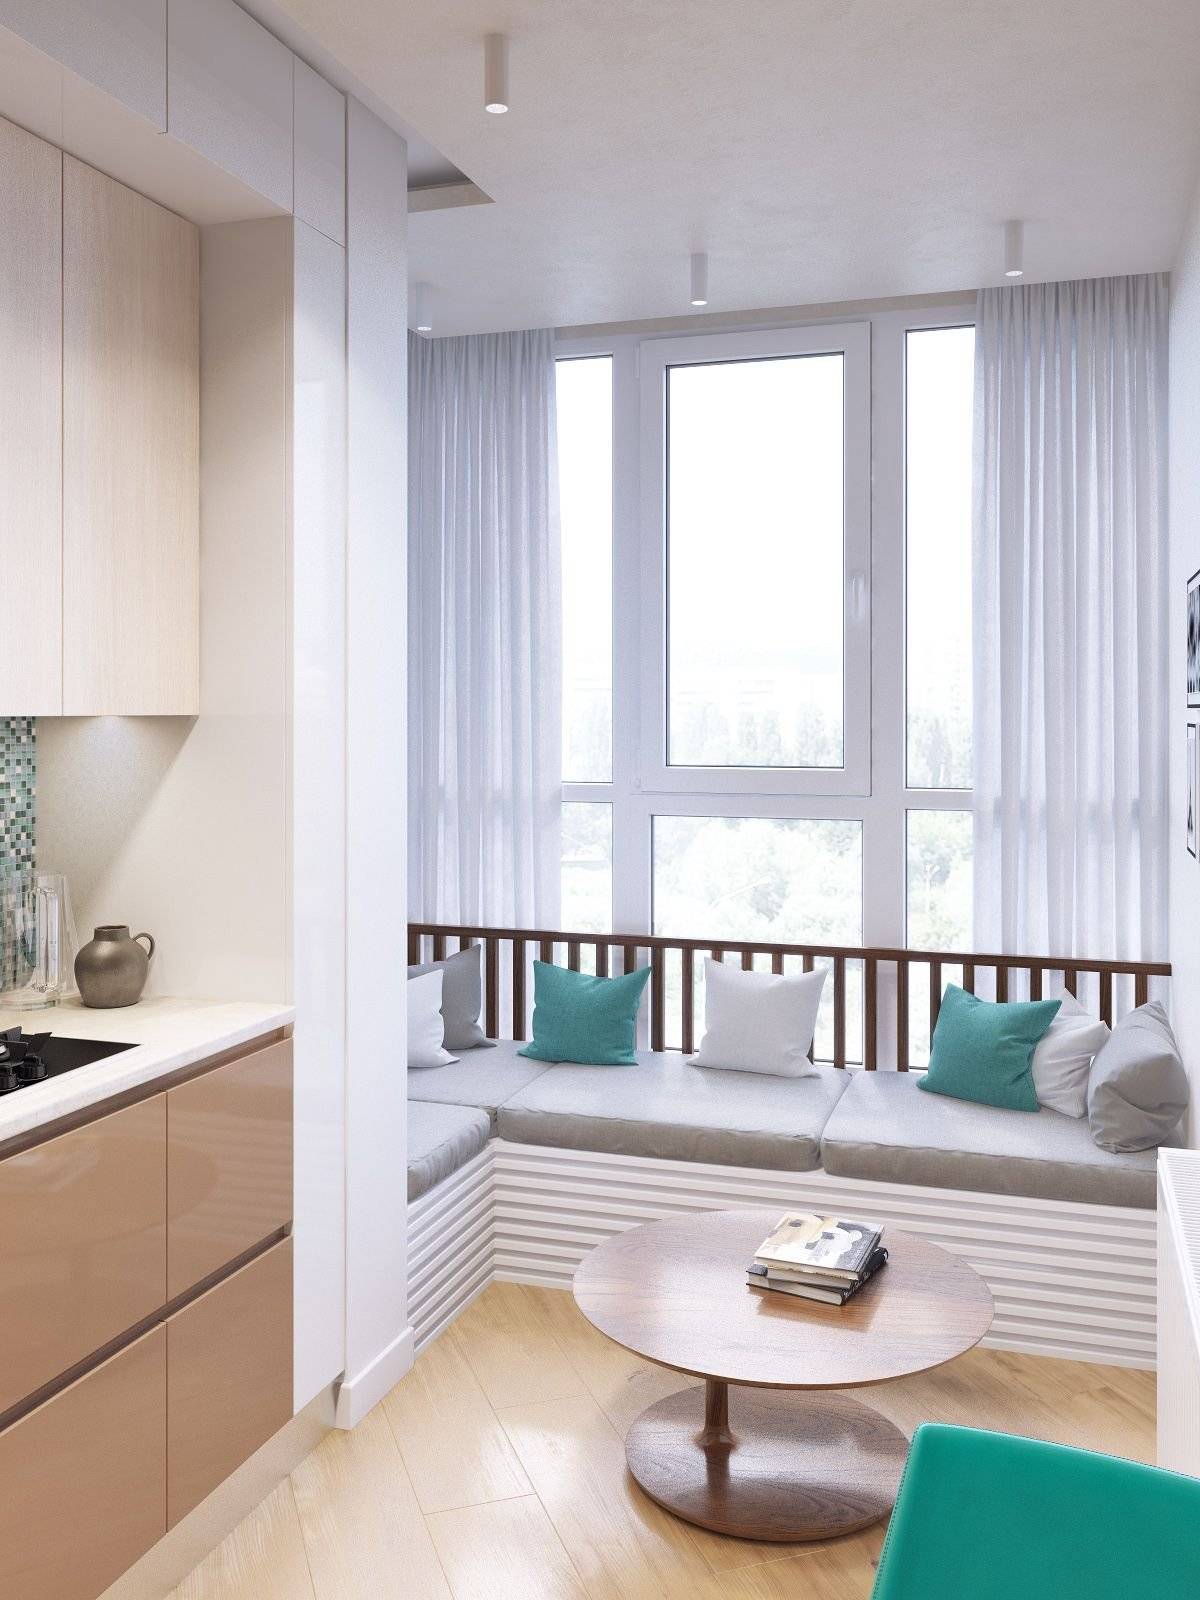 Совмещение кухни с балконом – оптимальный инструмент для увеличения пространства